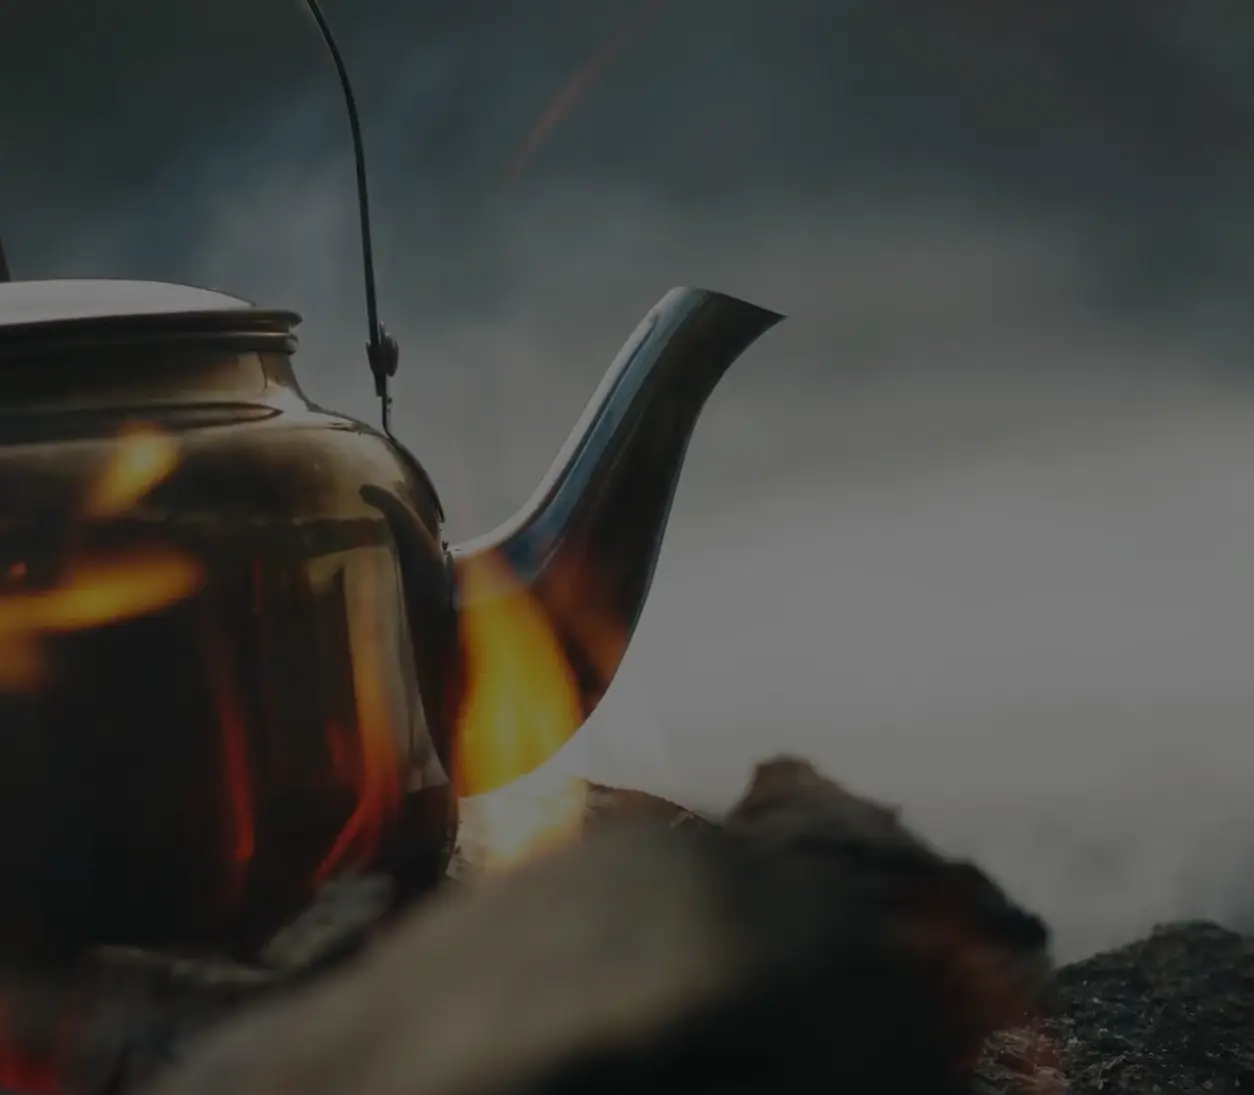 Teapot on fire